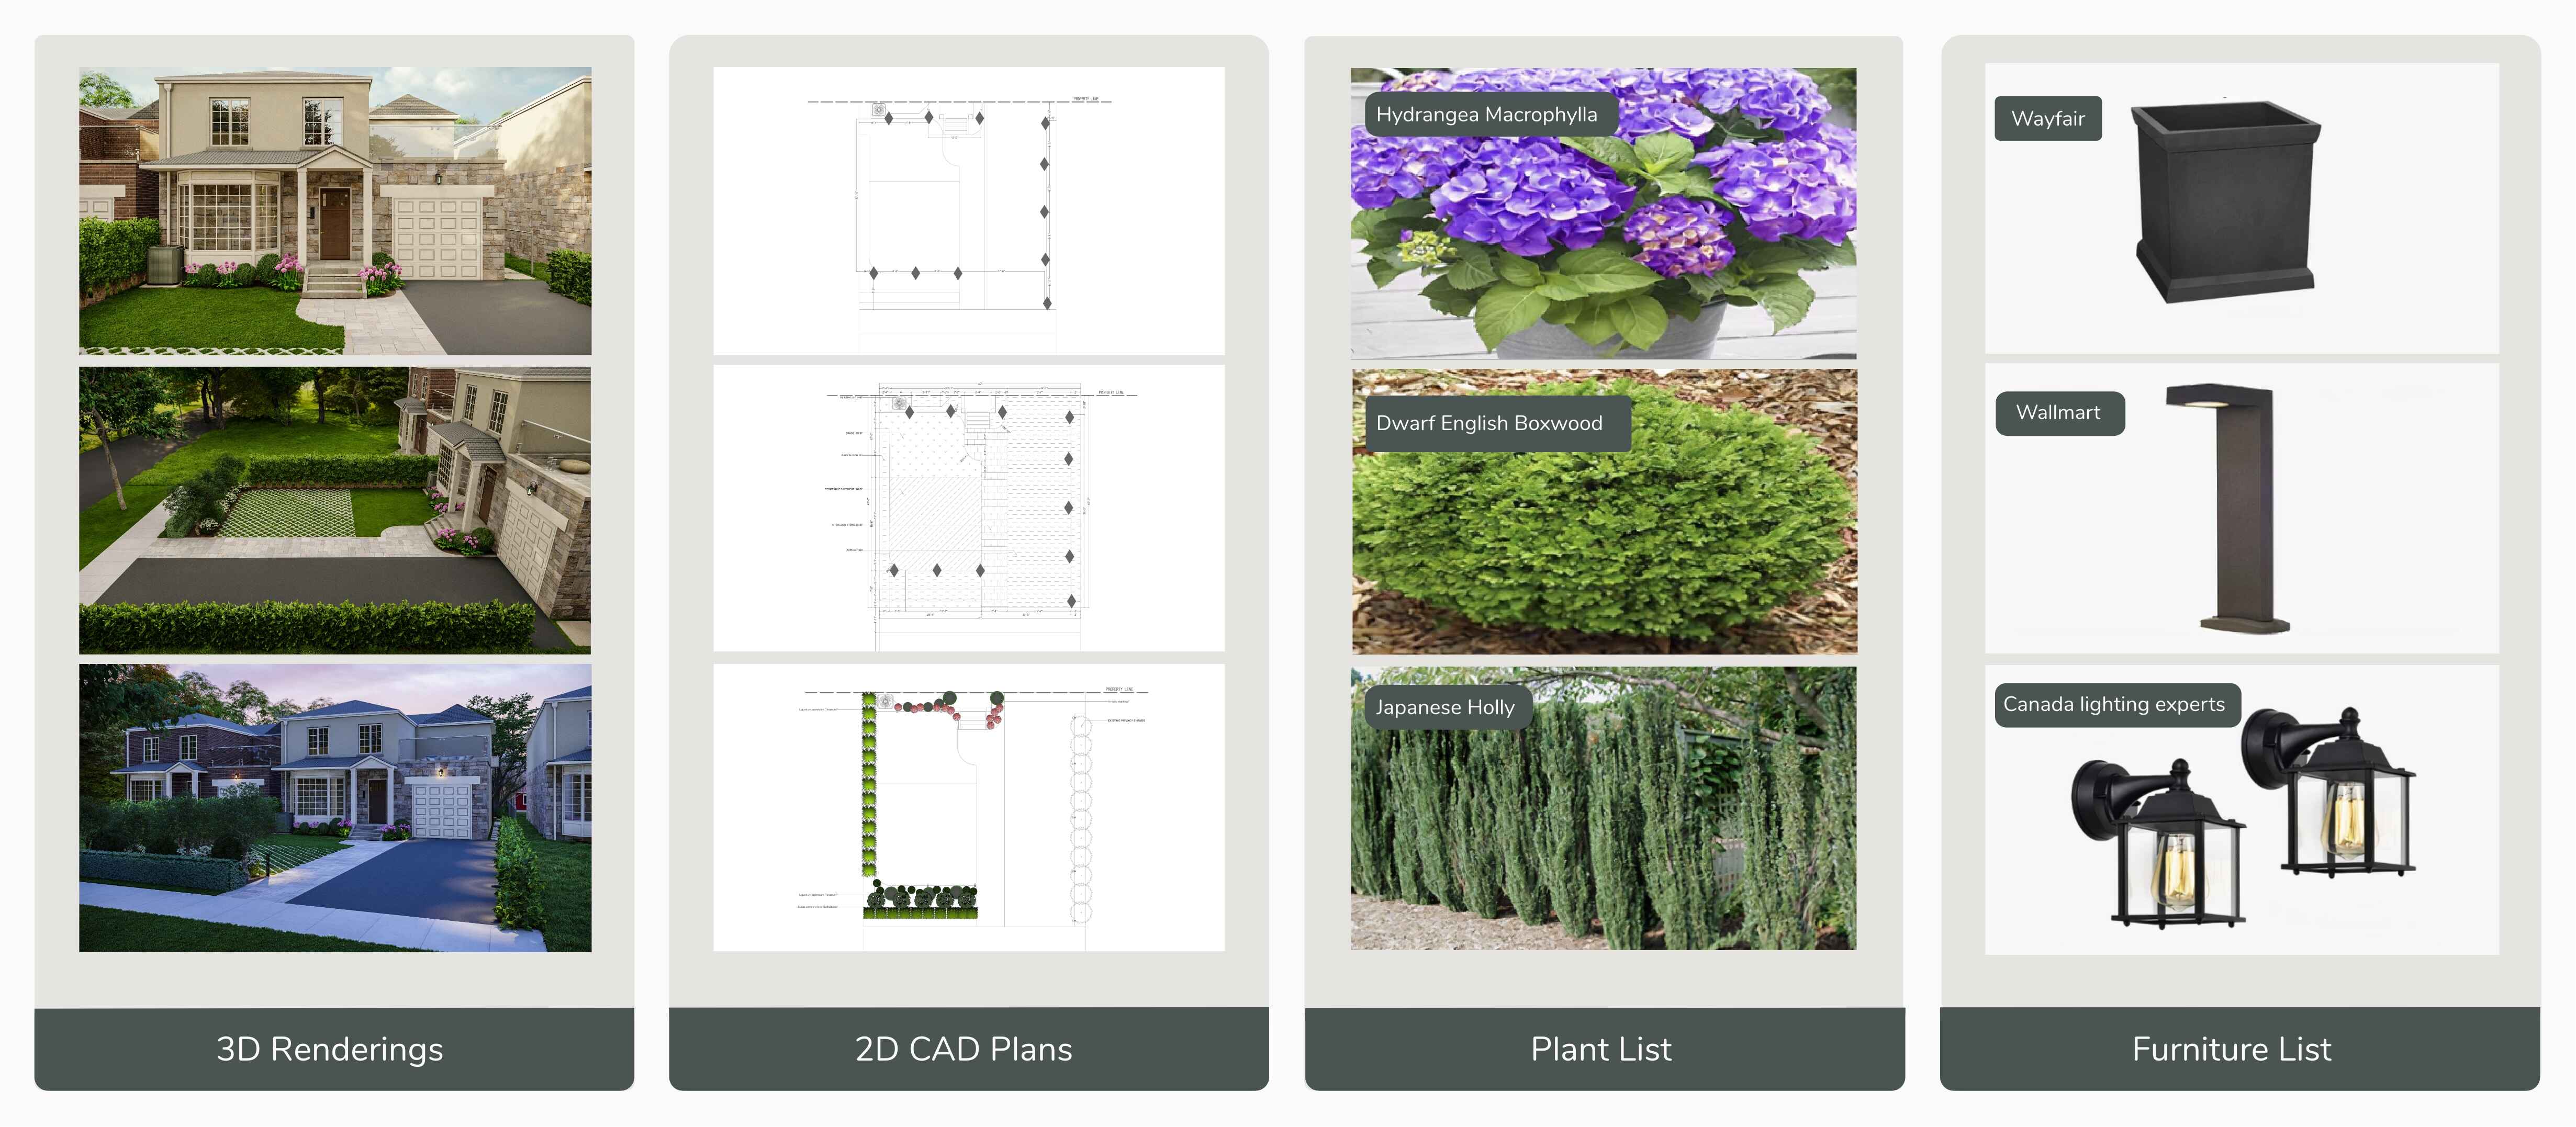 Landscape Design Elements - 3D Renderings, 2D CAD Plans, Plant and Furniture Lists